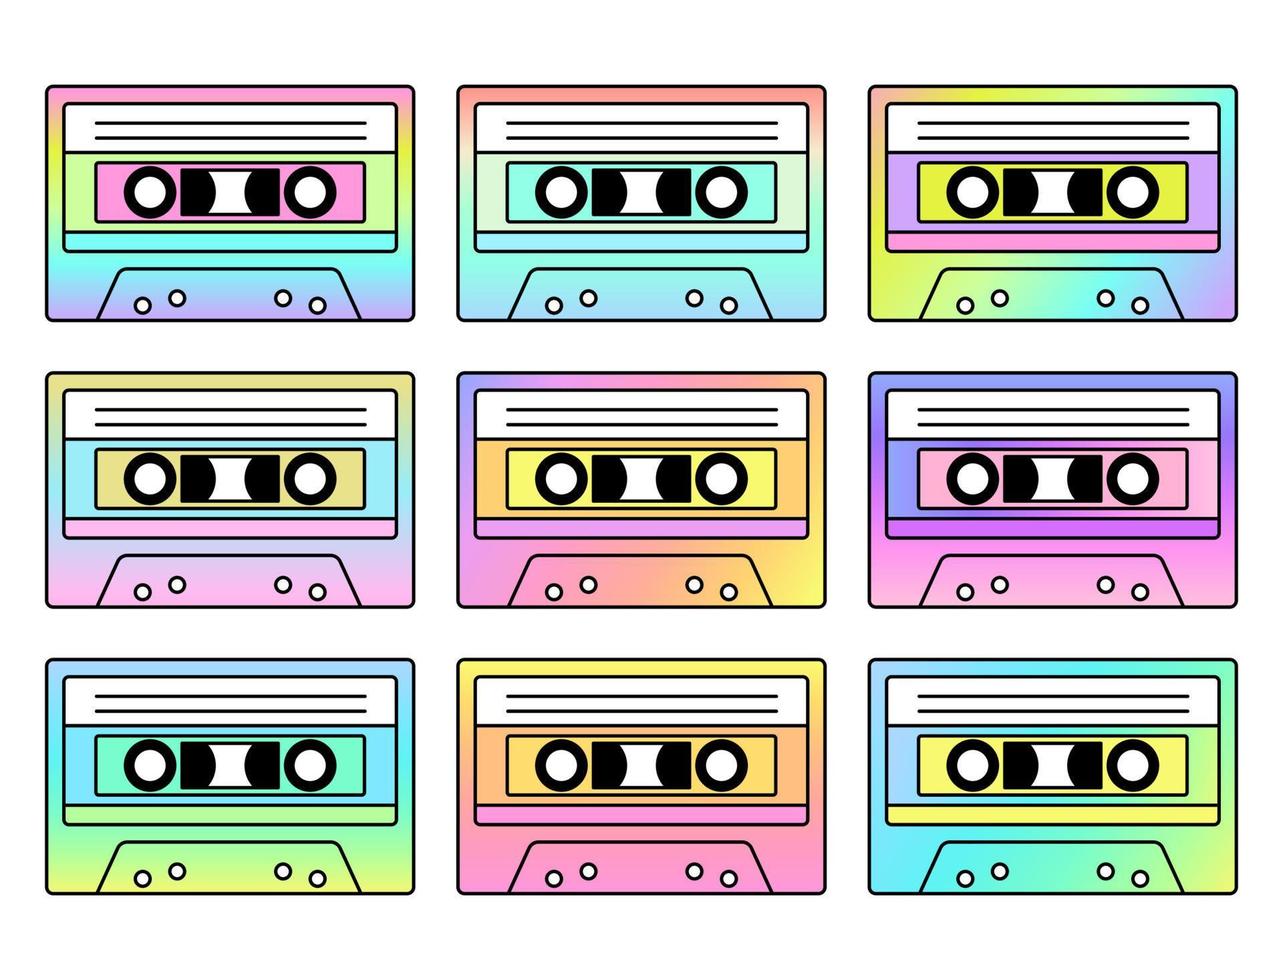 https://static.vecteezy.com/ti/vecteur-libre/p1/20603672-ancien-cassette-enregistrer-retro-mixtape-disco-danse-l-audio-cassette-colore-degrades-isole-sur-blanc-contexte-vecteur-illustration-vectoriel.jpg